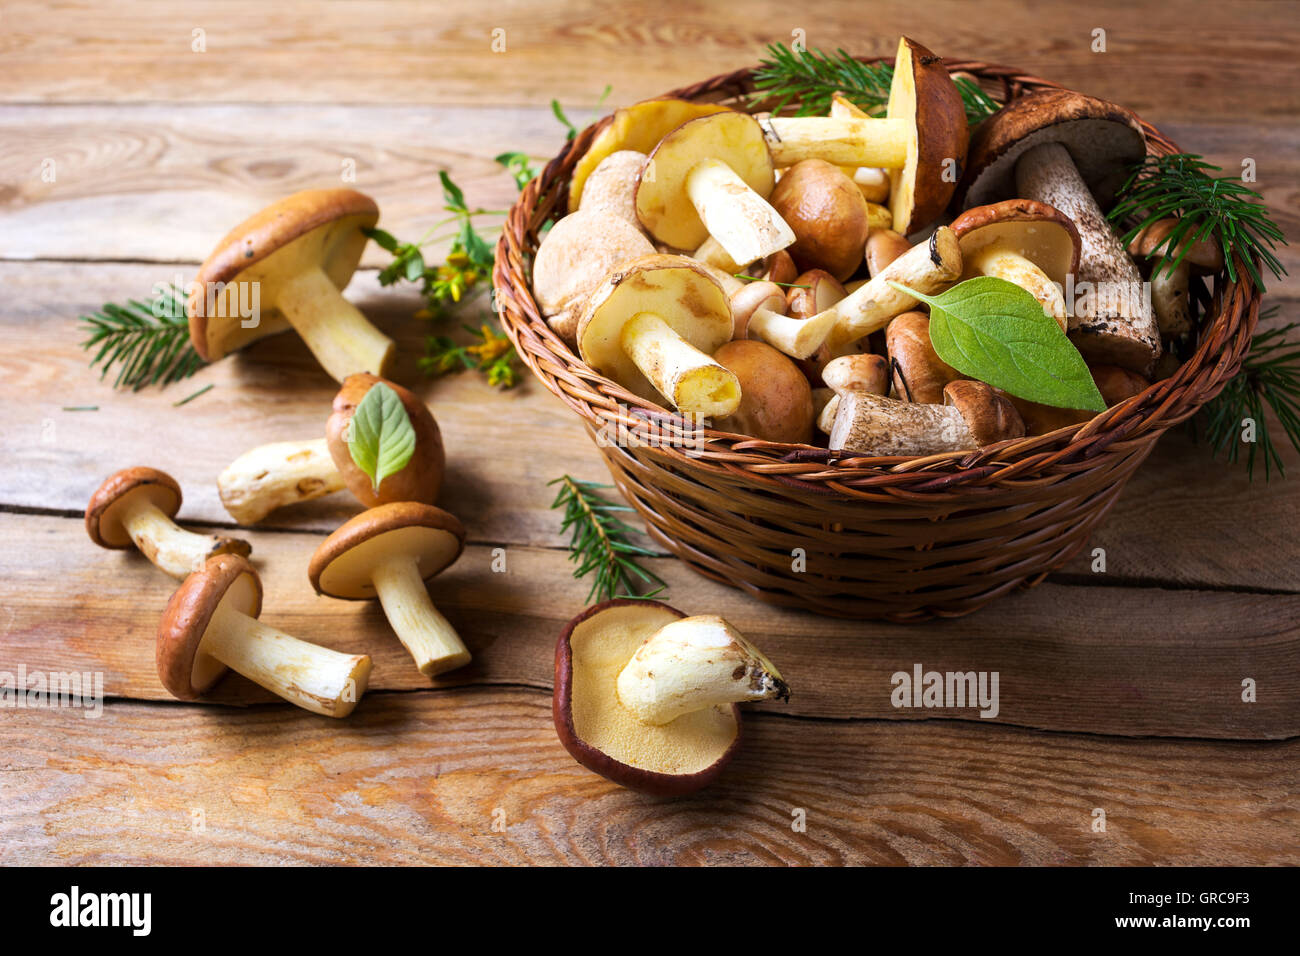 Wald, Pilze auf dem rustikalen hölzernen Hintergrund. Frische rohe Champignons auf dem Tisch. Stockfoto